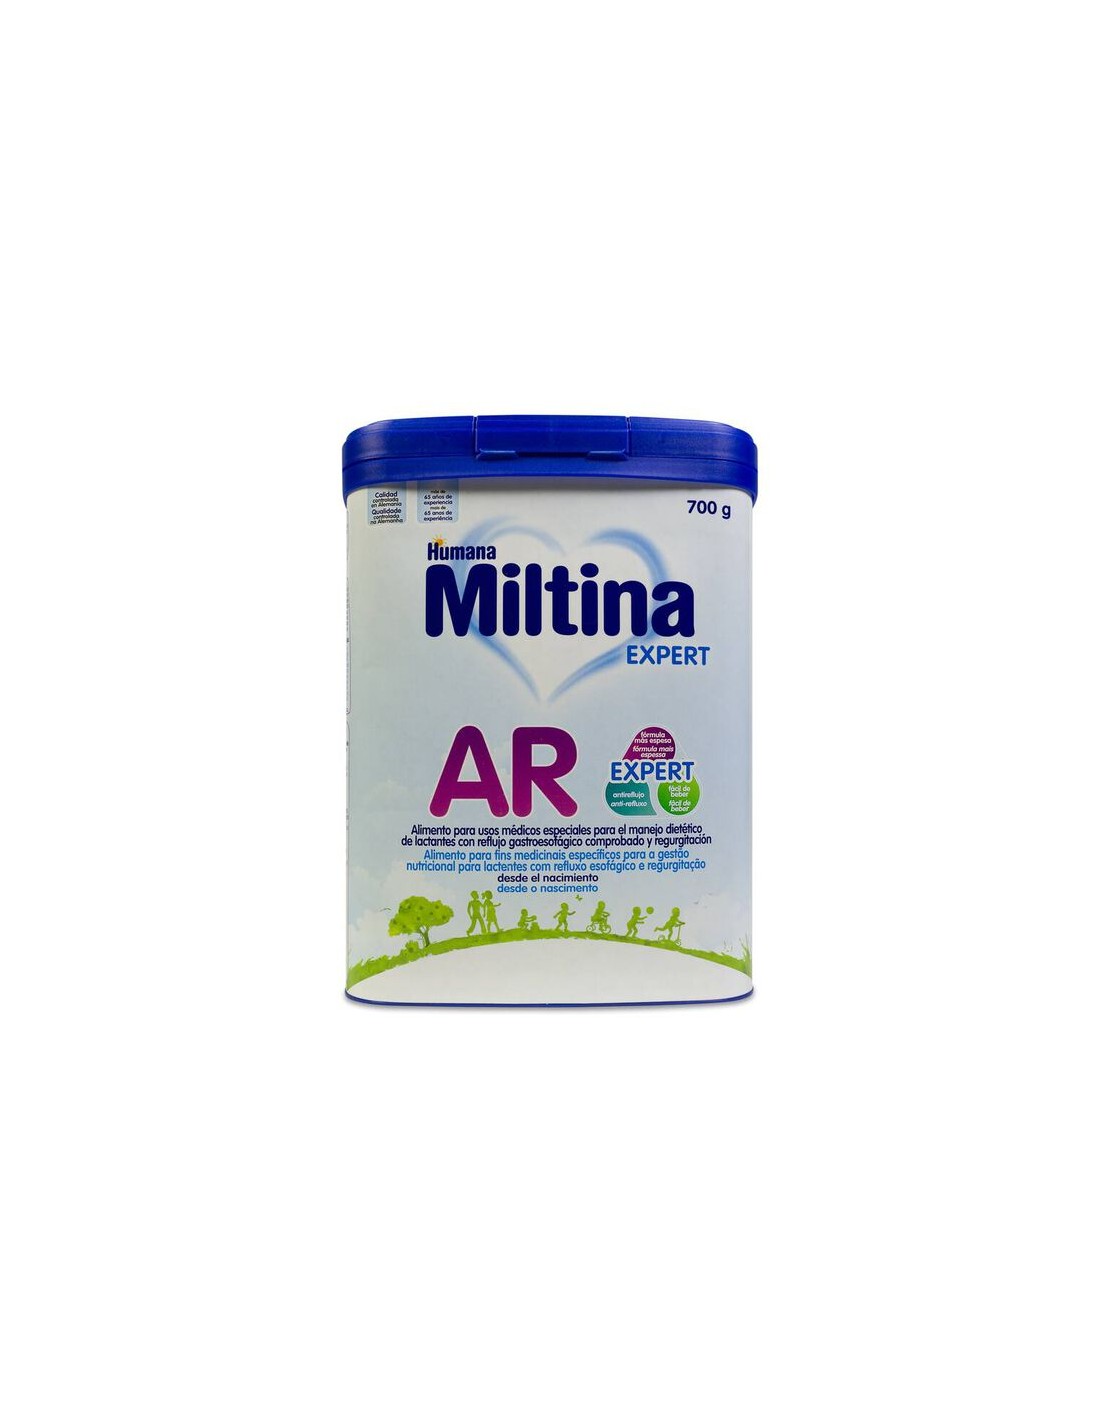 Miltina® 1: leche infantil con DHA